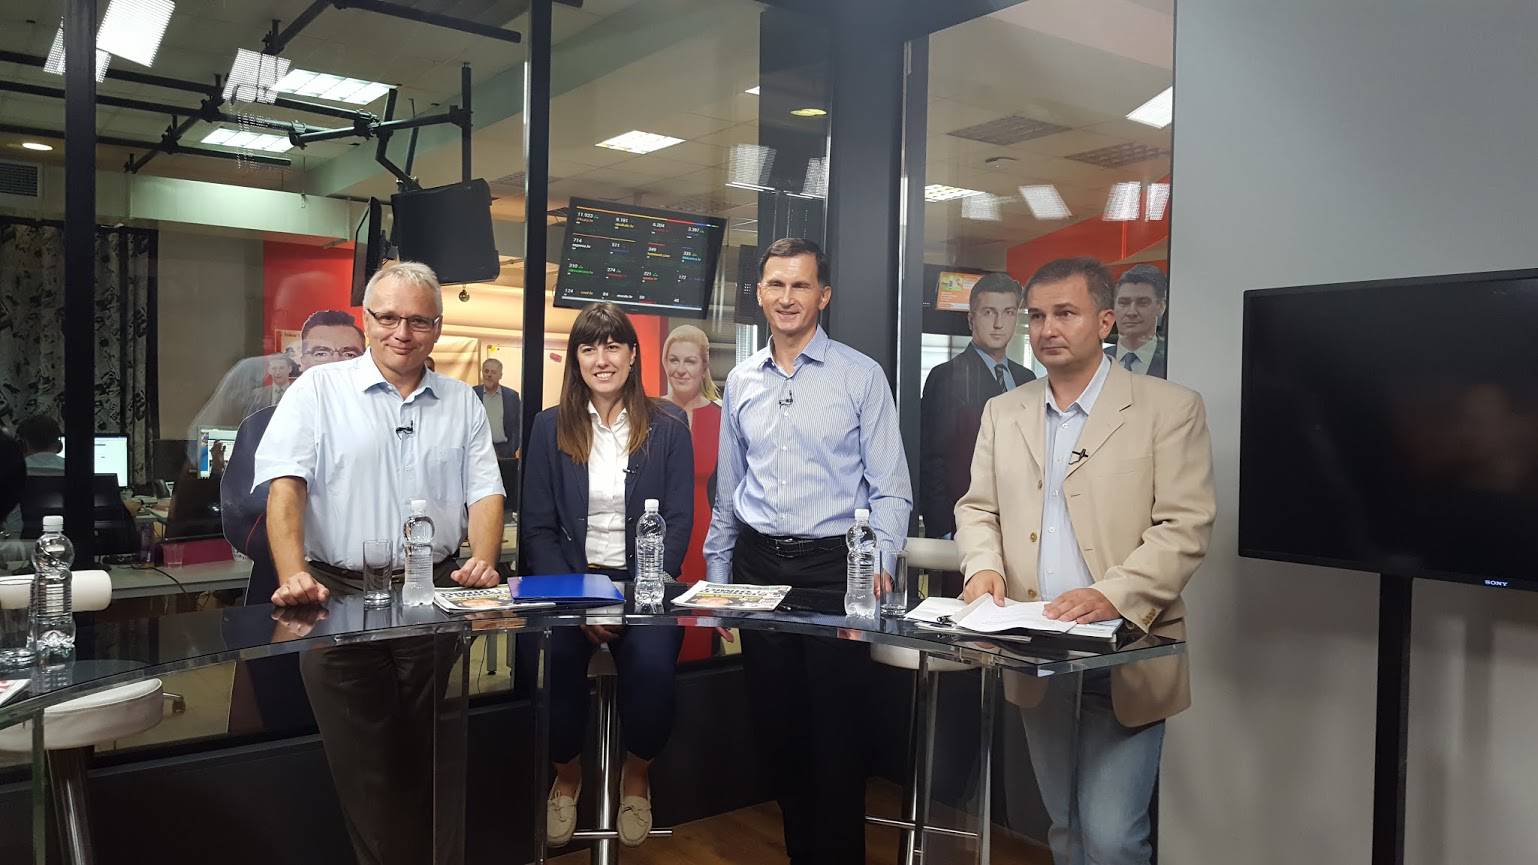 Primorac: Sustav nam nameću neobrazovane političke opcije